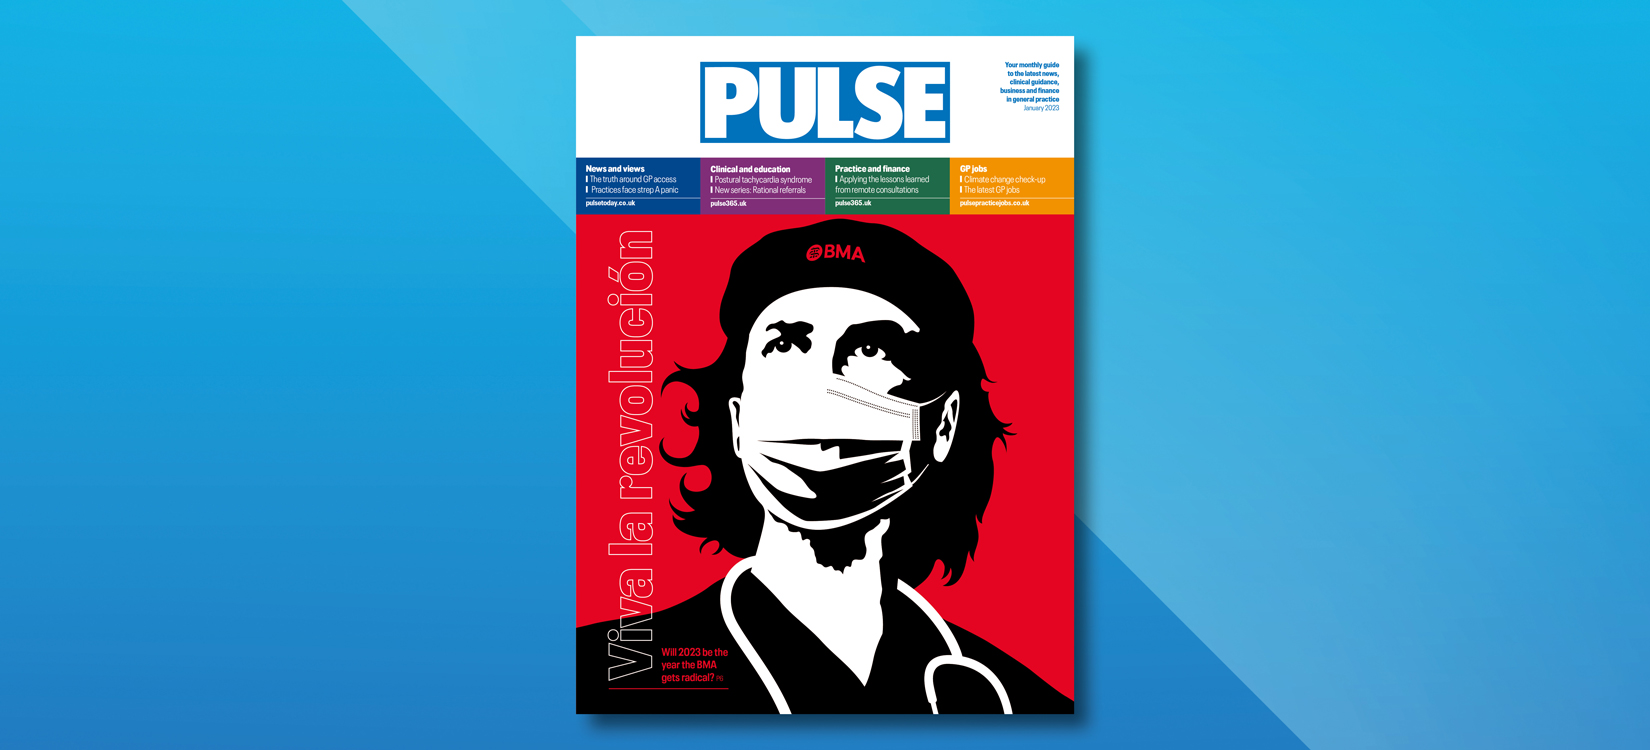 Pulse: Viva la revolución